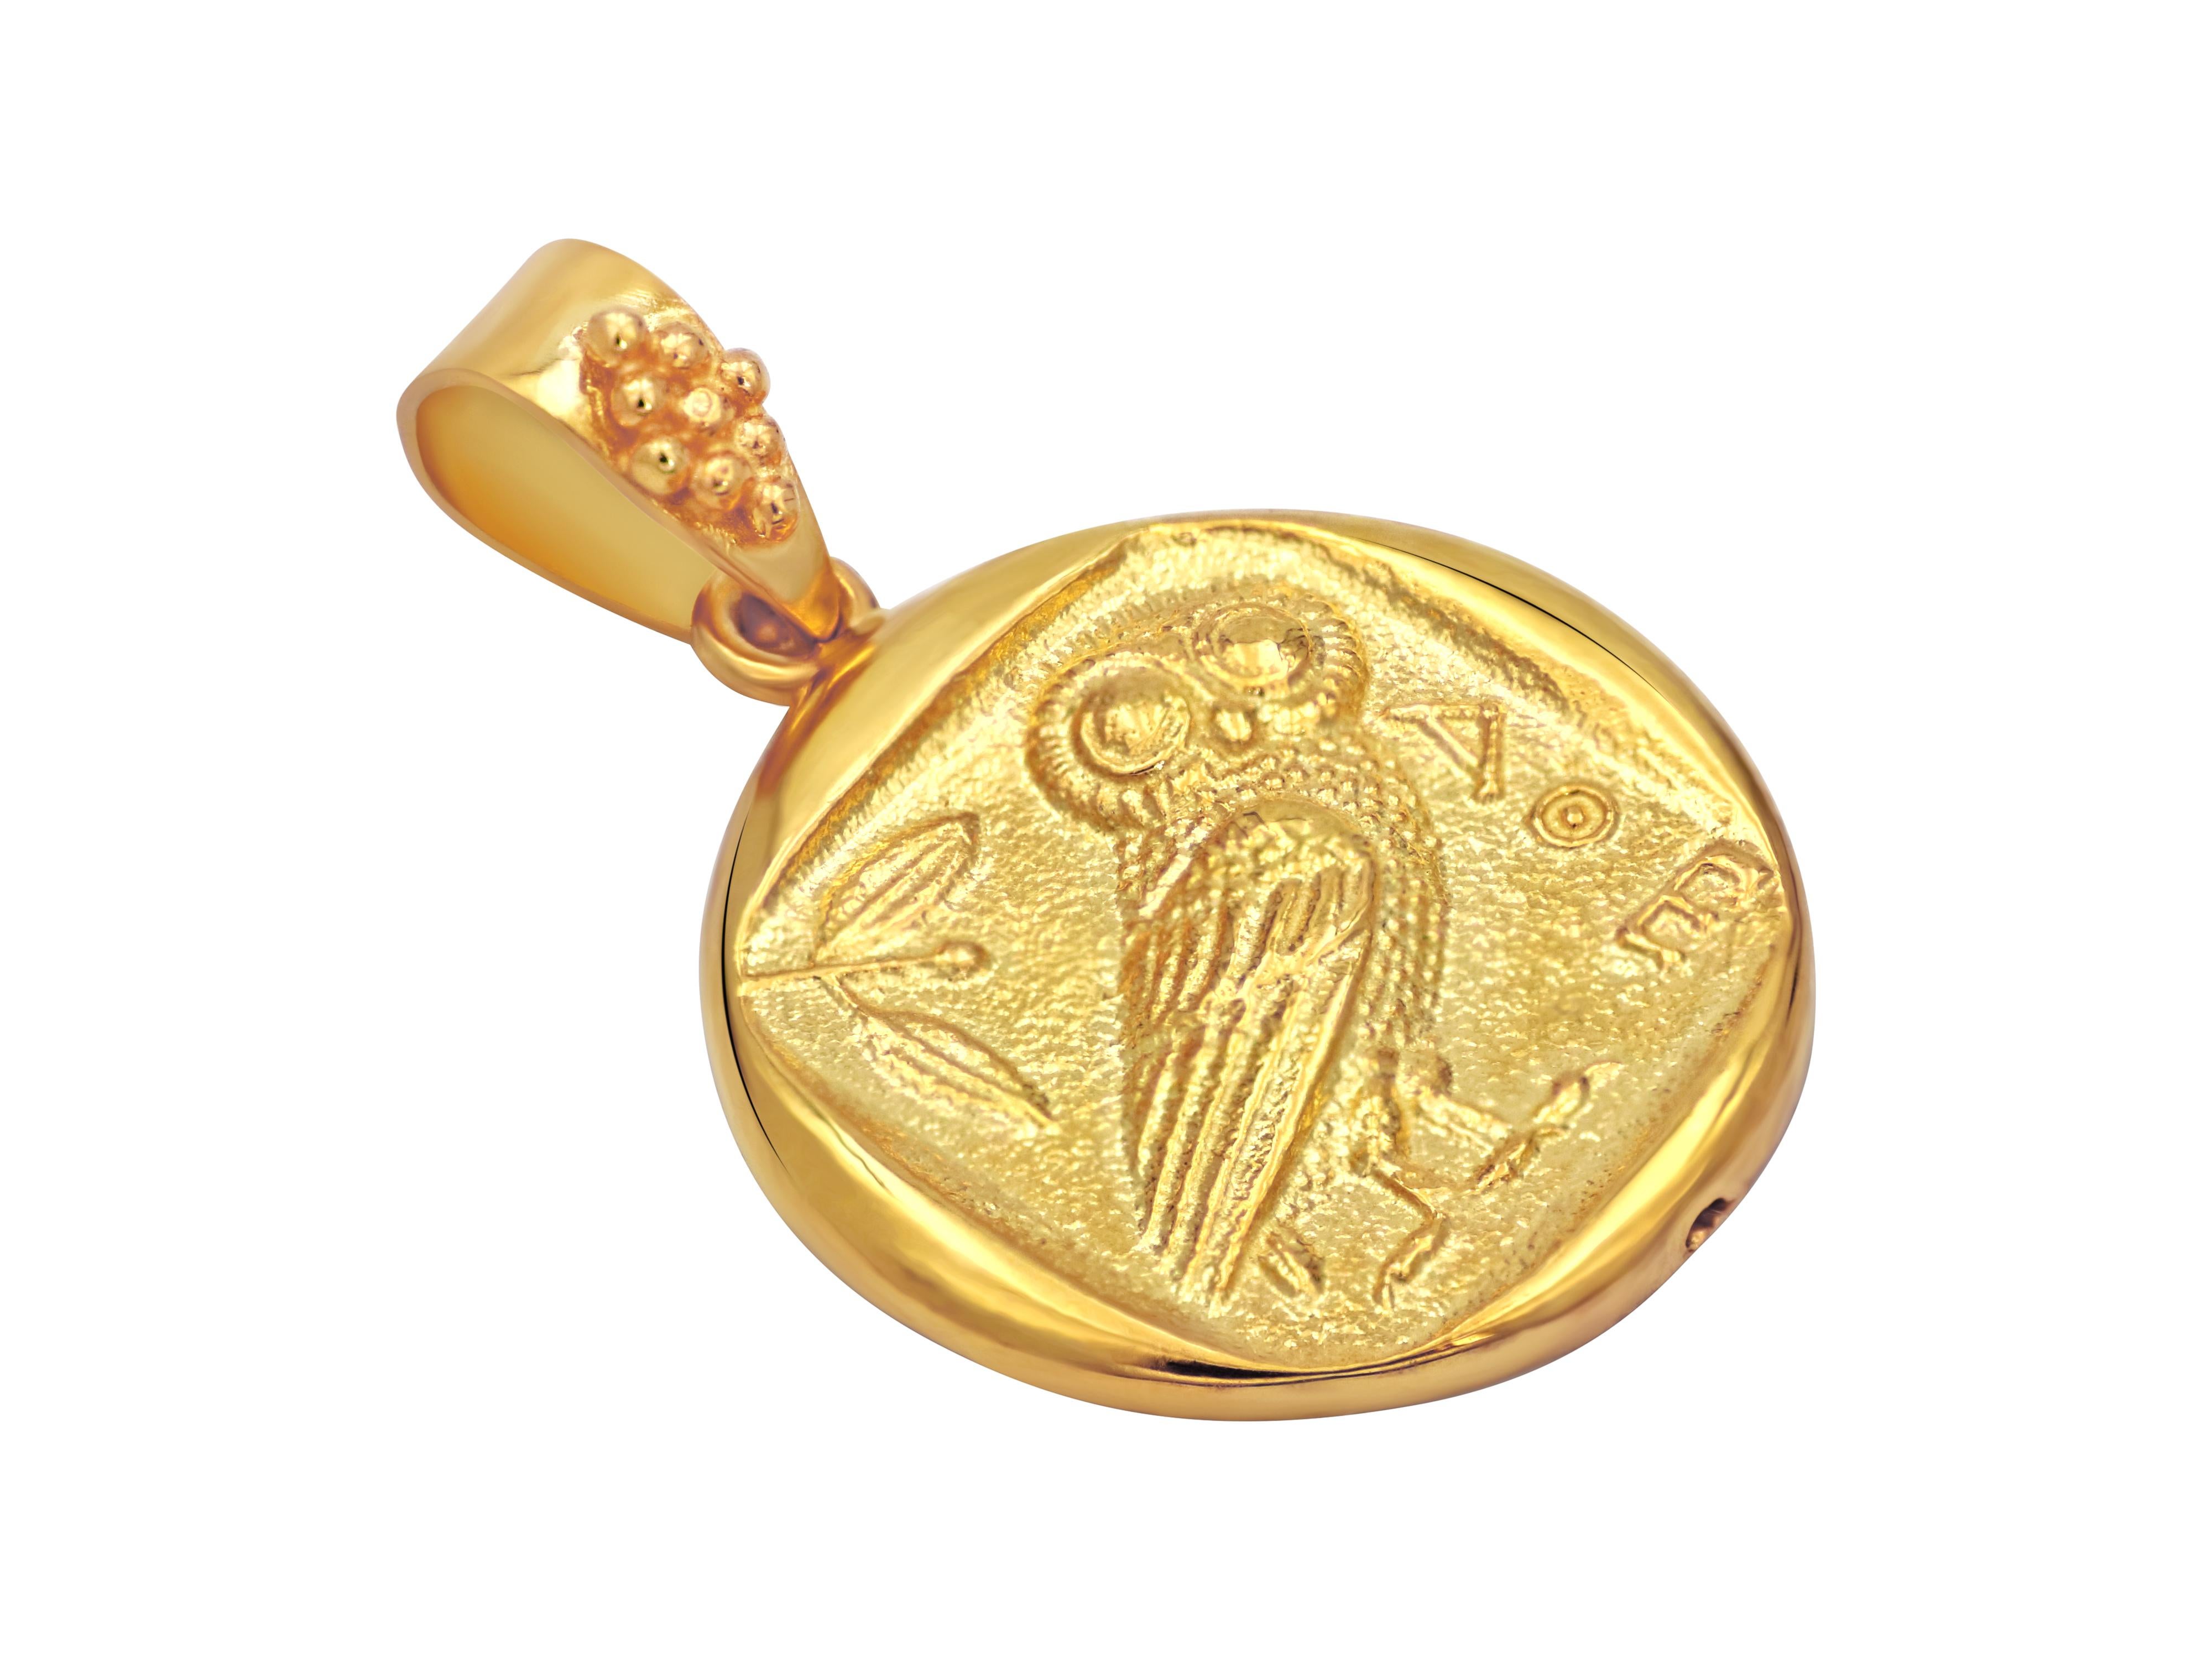 Réplique d'une pièce de monnaie de la Grèce antique datant de 440 avant J.-C., sertie en or jaune 18 carats. La chouette était le symbole d'Athènes et de la sagesse et l'oiseau préféré de la déesse Athéna dans laquelle elle se transformait très